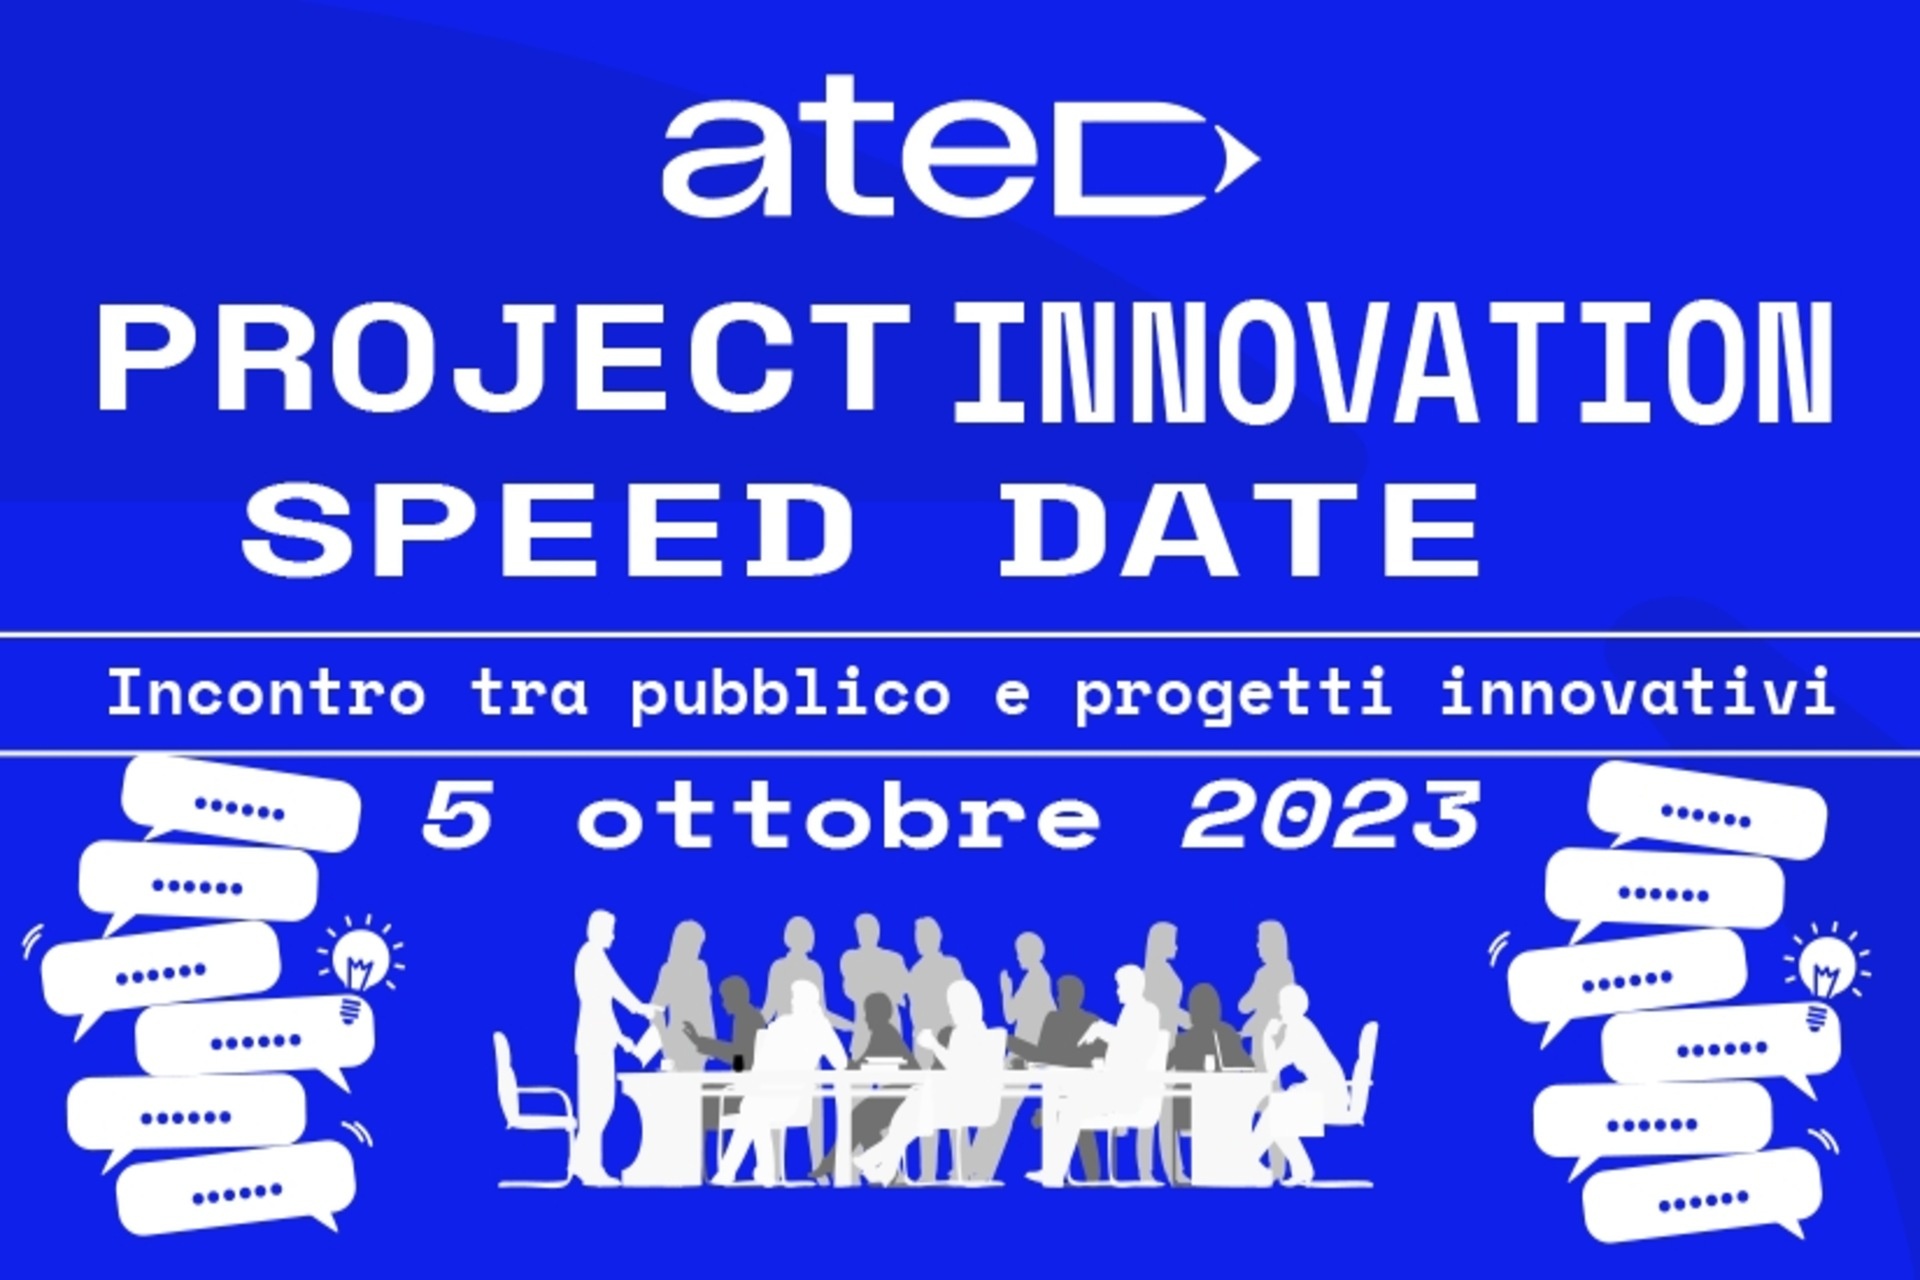 Progetti: la locandina dello ATED Project Innovation Speed Date